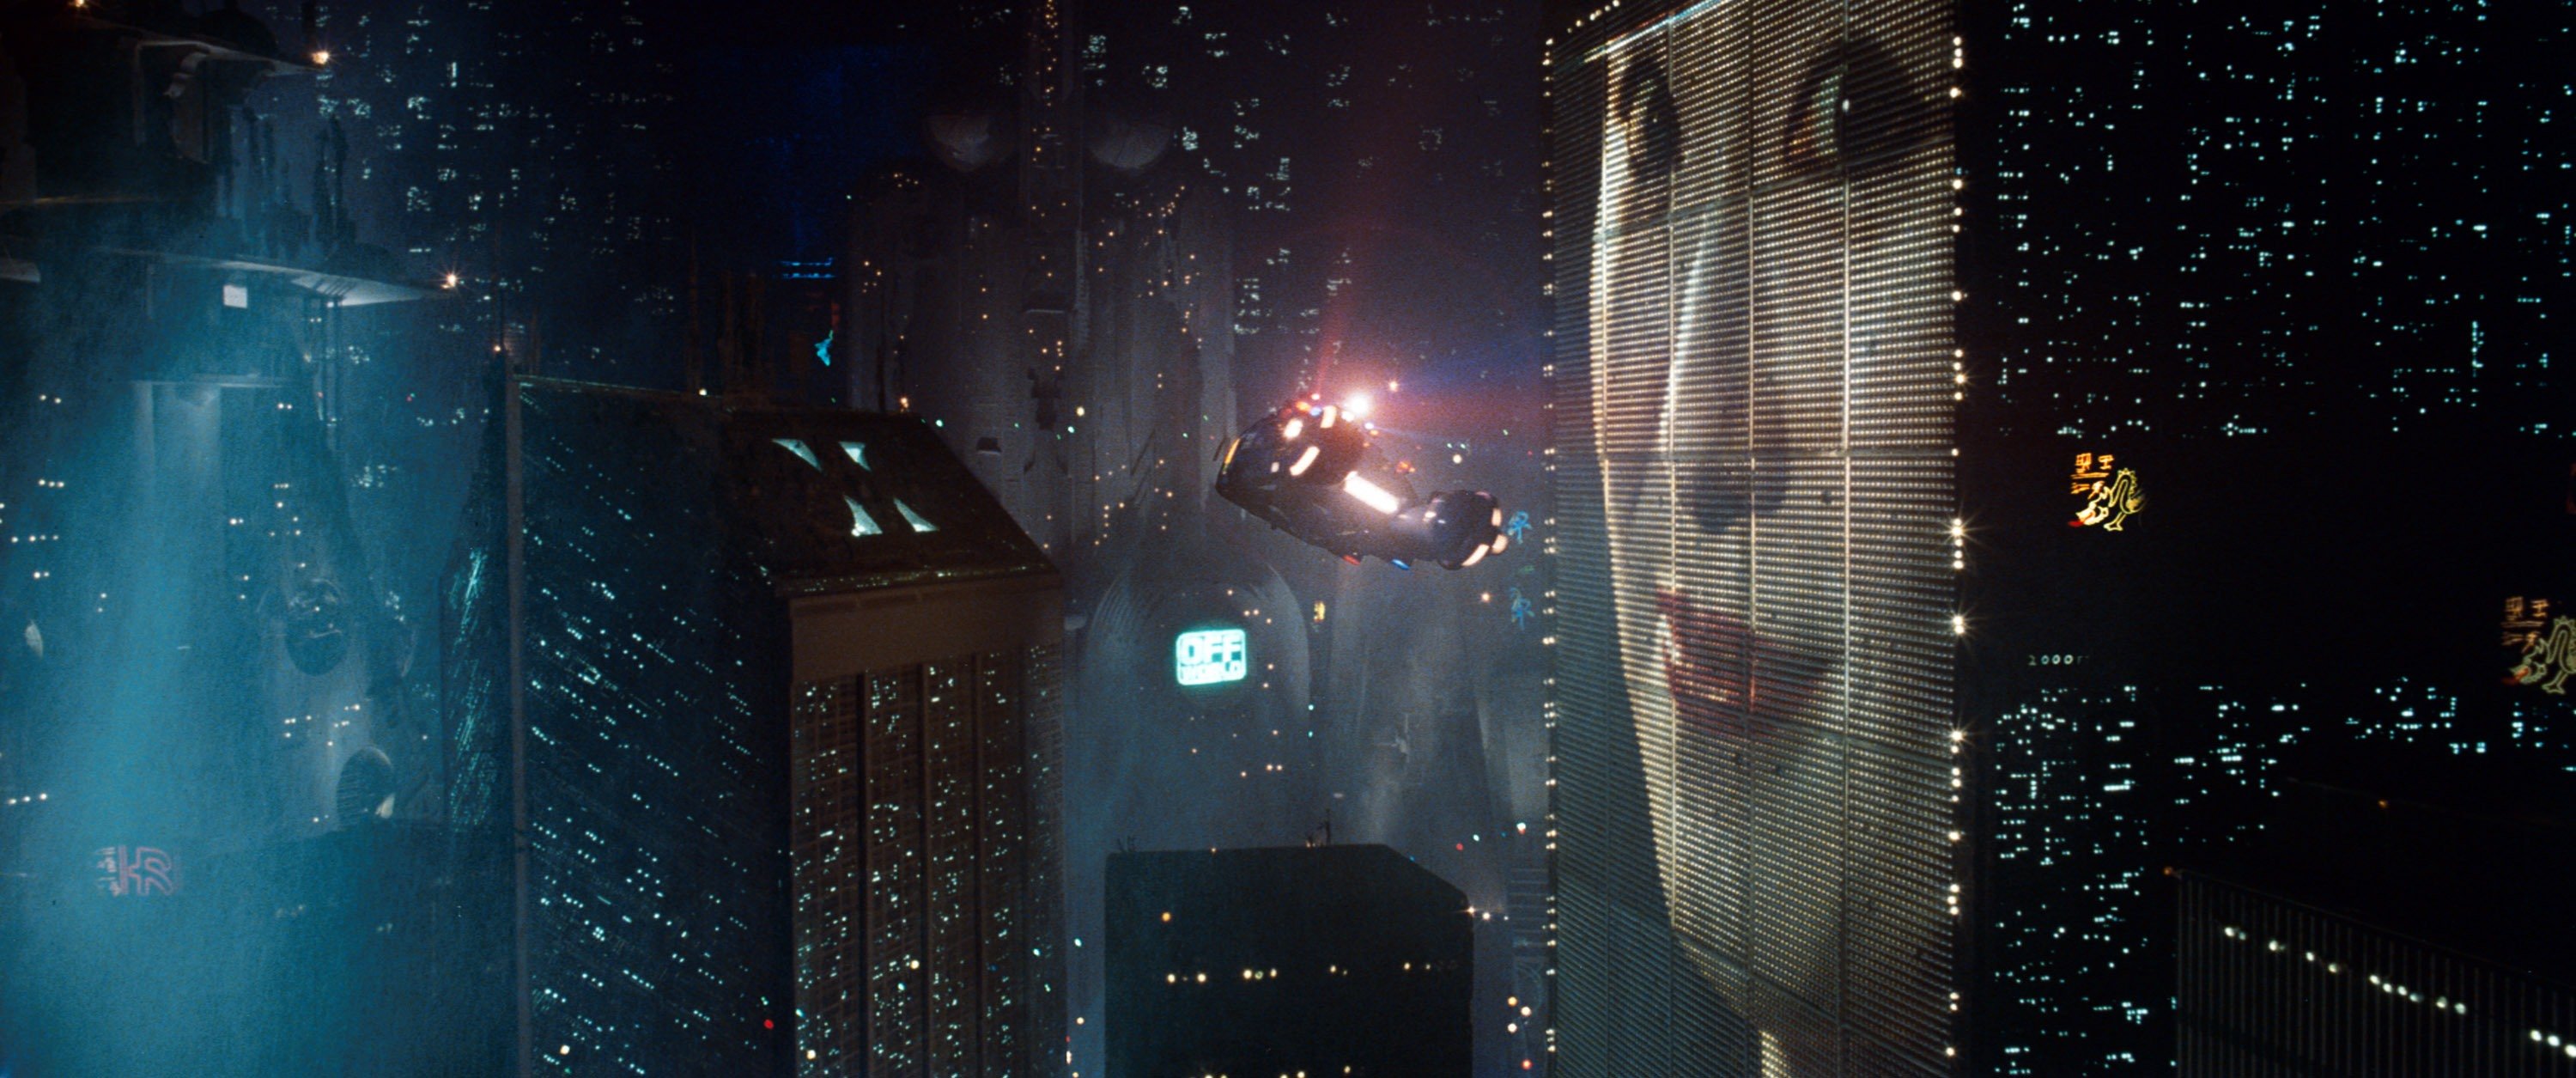 Blade Runner Cityscape